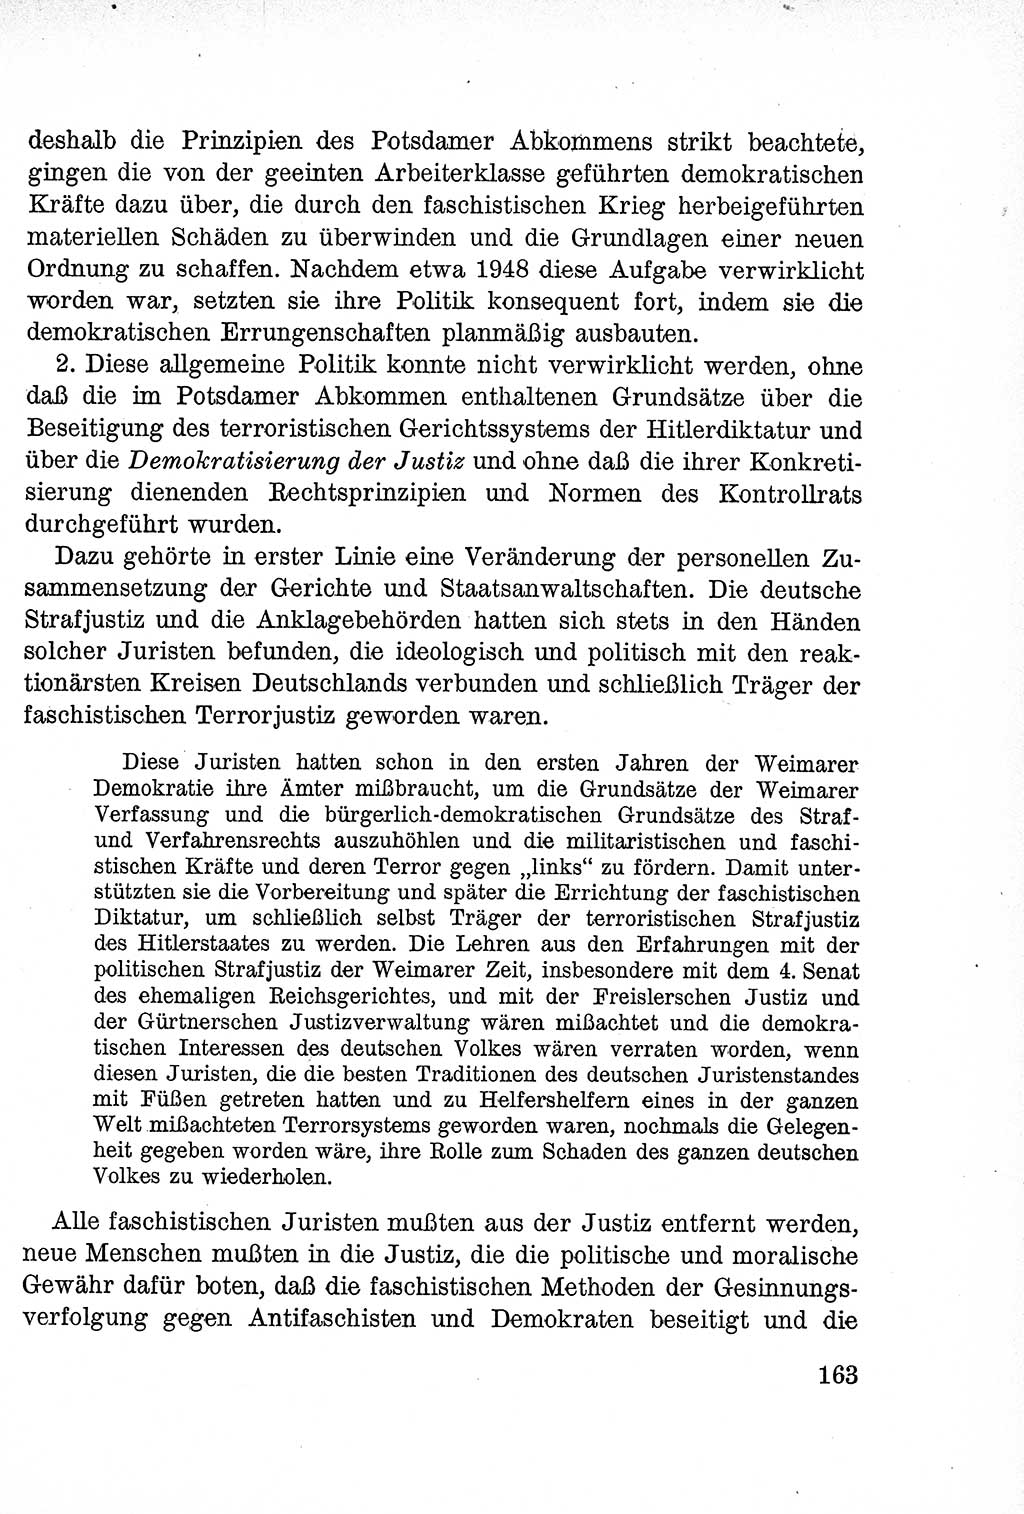 Lehrbuch des Strafrechts der Deutschen Demokratischen Republik (DDR), Allgemeiner Teil 1957, Seite 163 (Lb. Strafr. DDR AT 1957, S. 163)